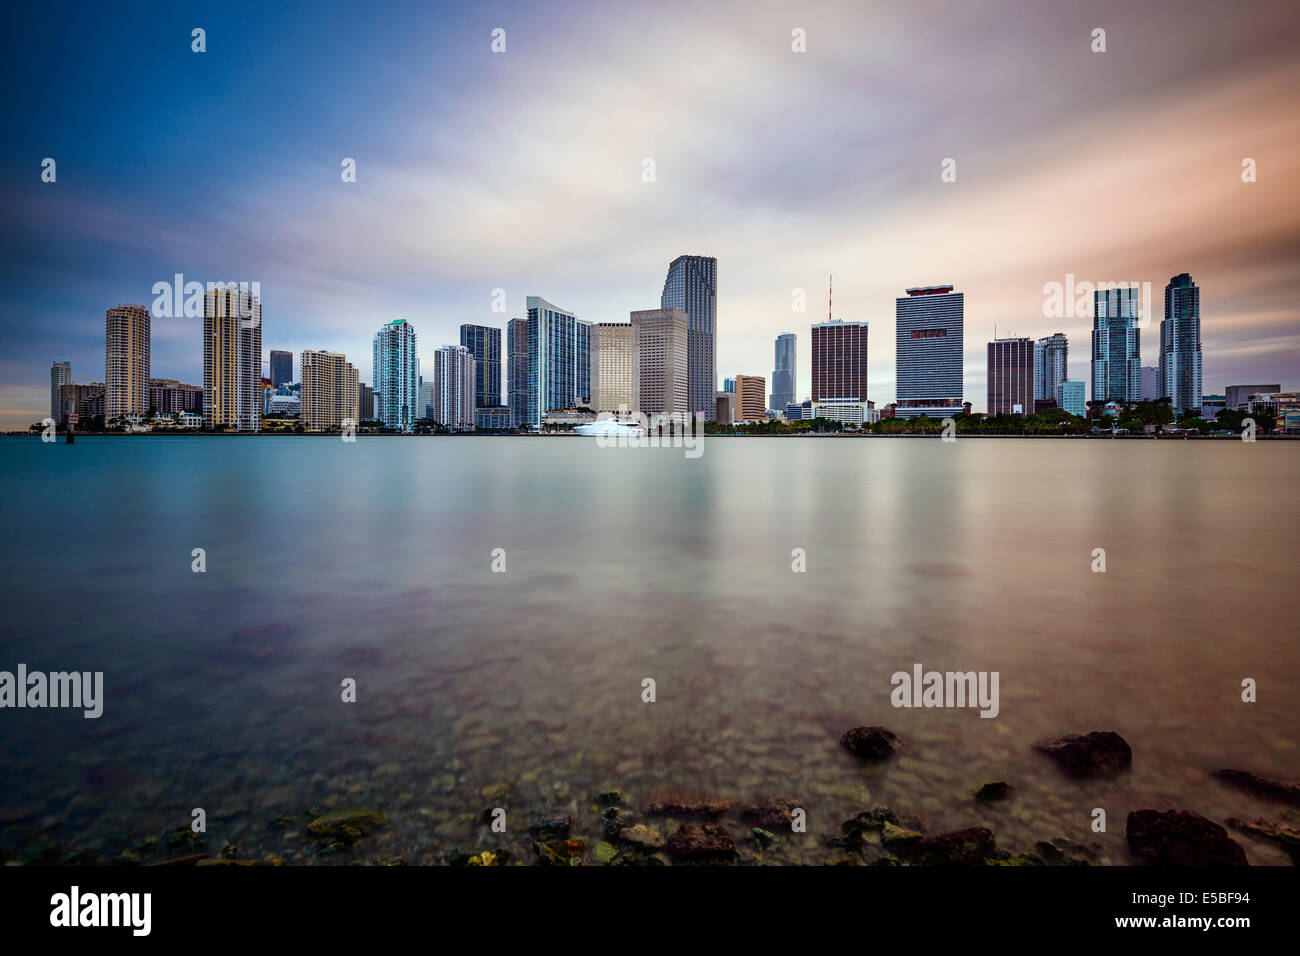 Miami, Florida, USA downtown cityscape. Stock Photo